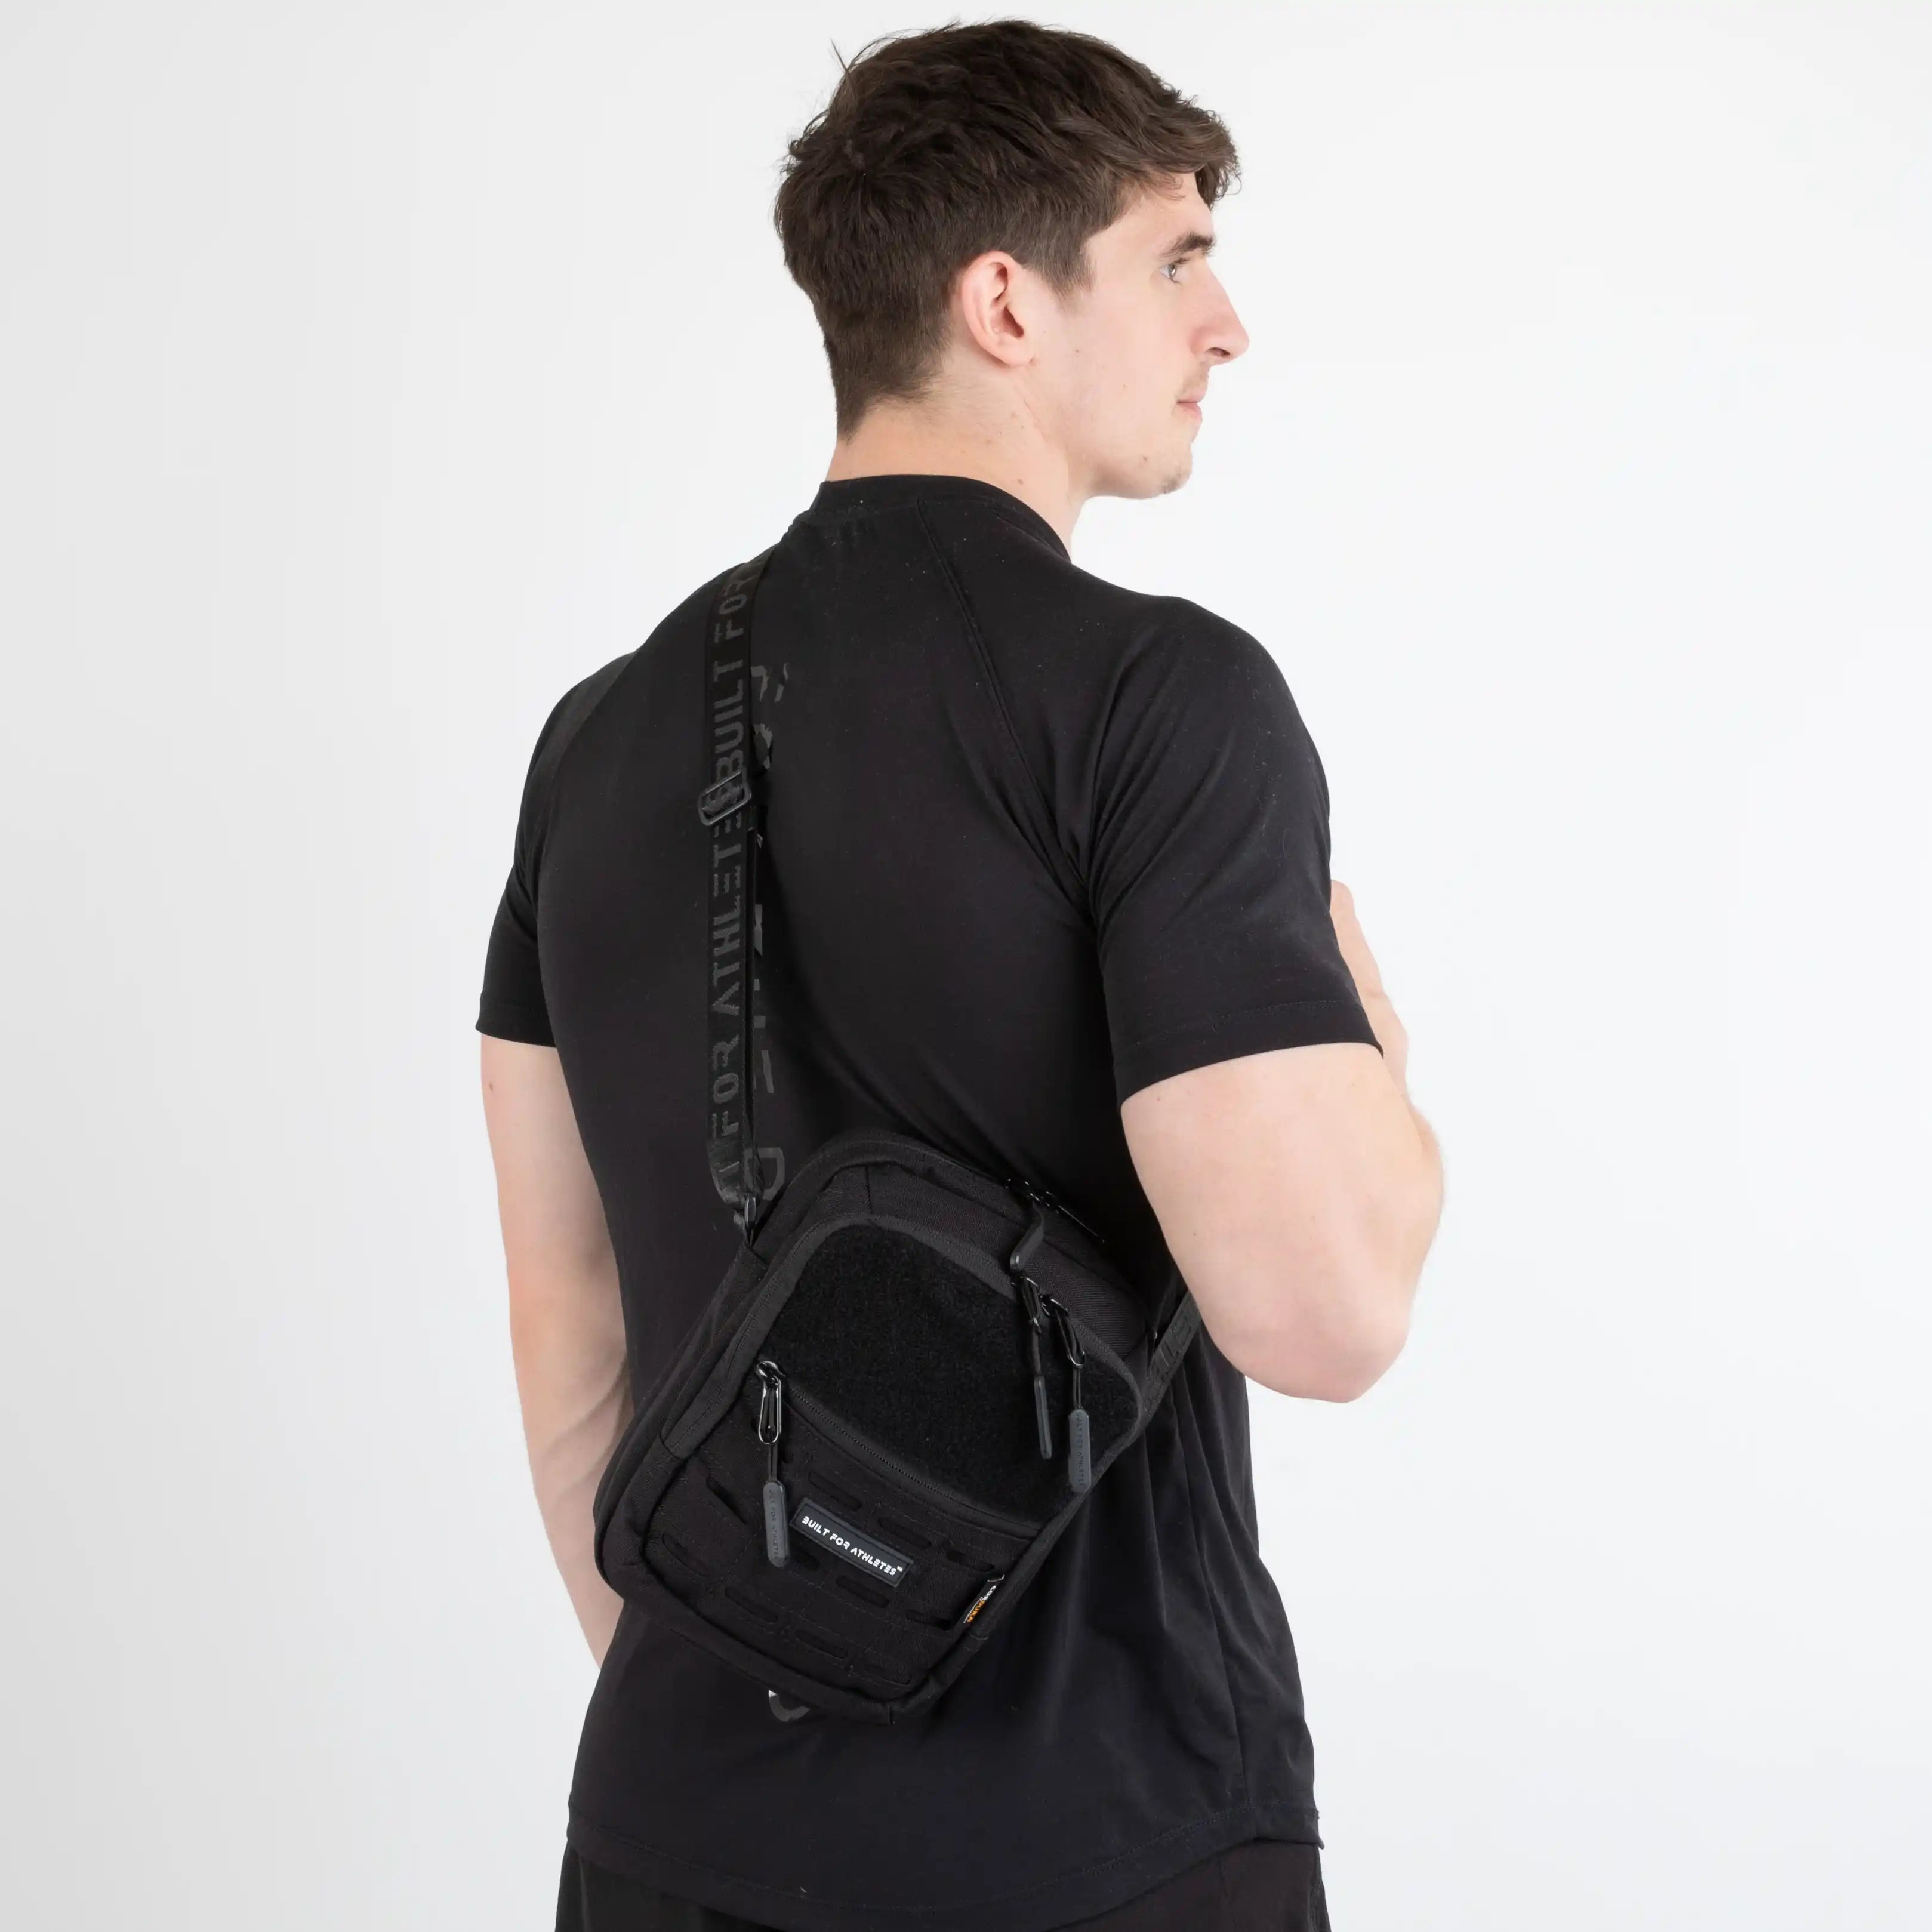 Built for Athletes Bags Pro Series Black Shoulder Bag